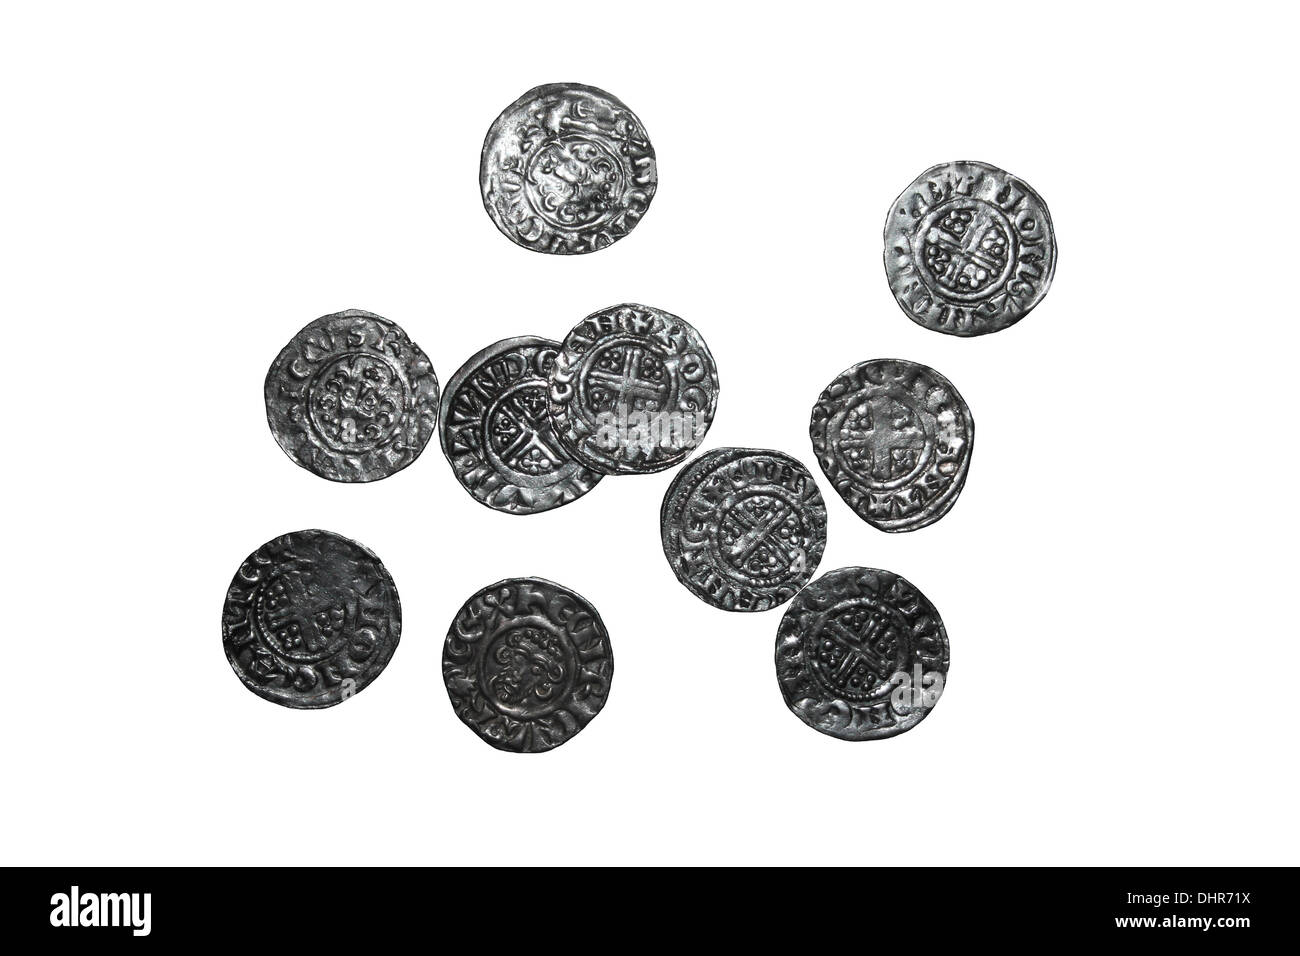 Los peniques de el montón de Eccles alrededor de 6200 ingleses, irlandeses, escoceses y las monedas extranjeras enterrado c1230 AD y encontró en 1864 Foto de stock